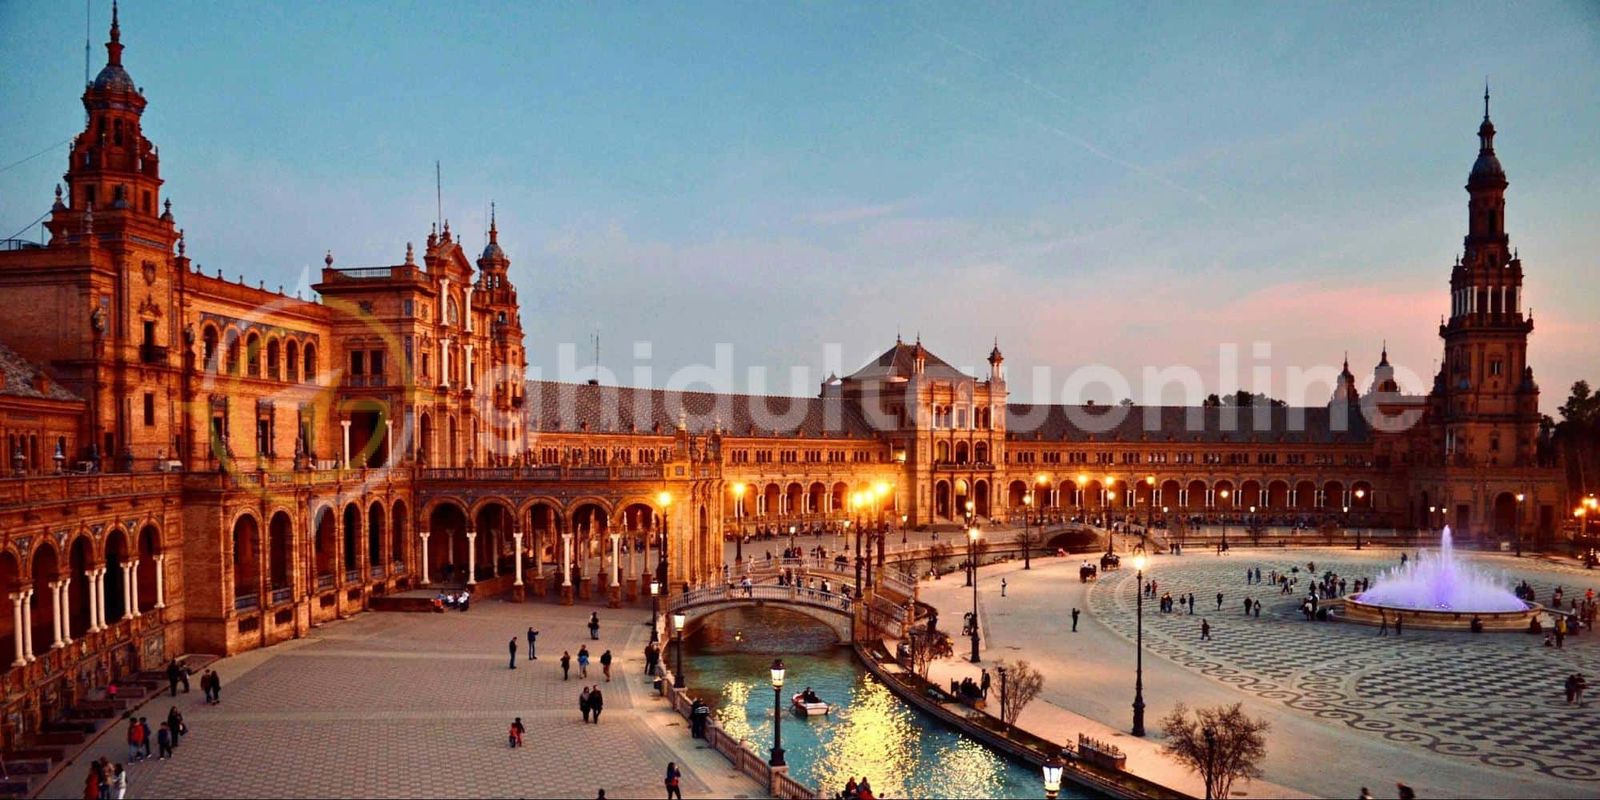 Sevilla - orașul desprins din decorurile orientale! Obiective turistice